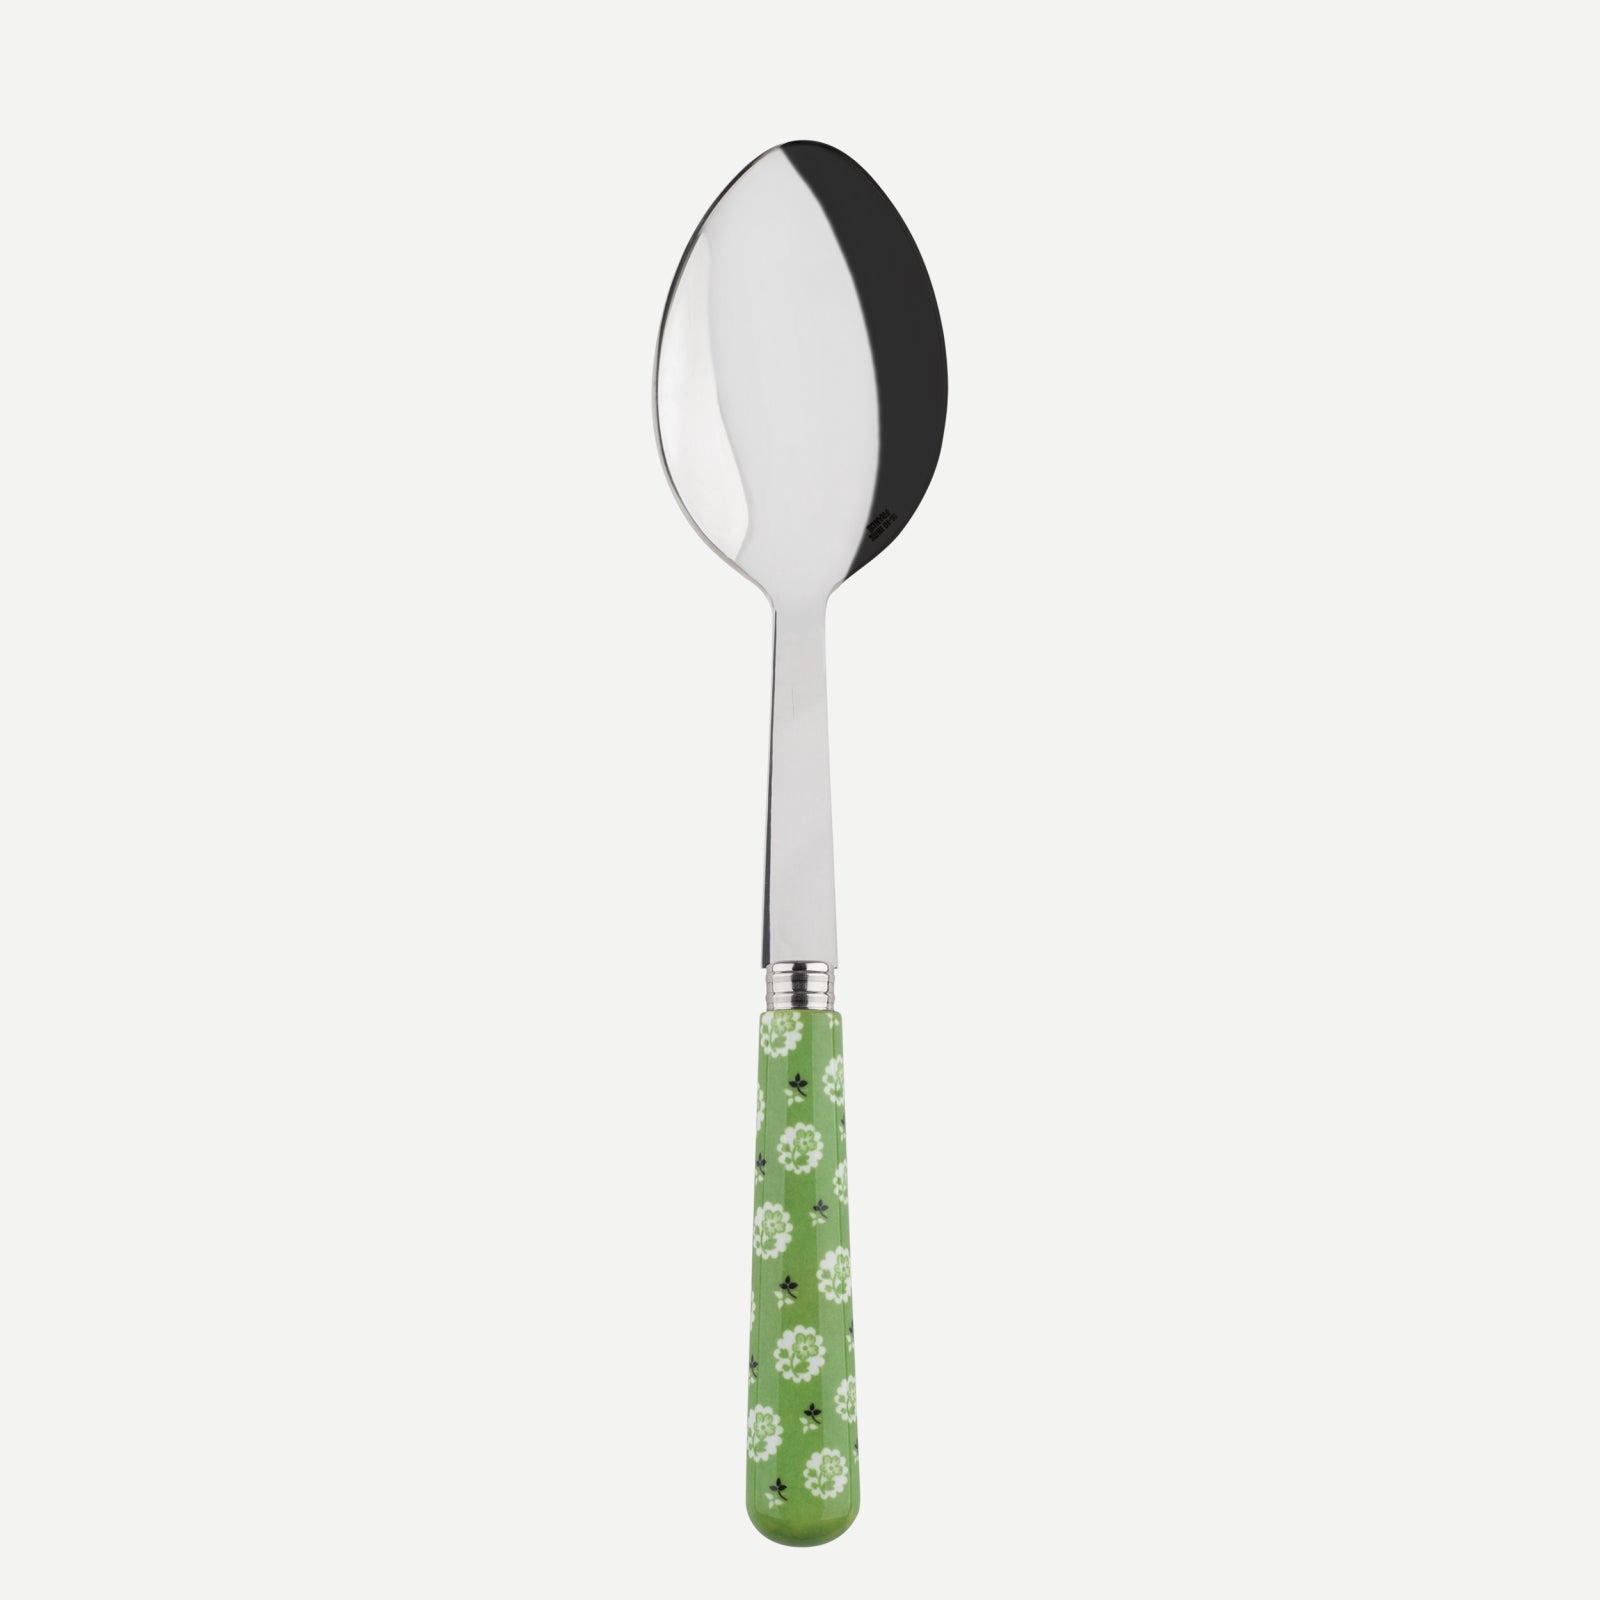 Serving spoon - Provencal - Garden green